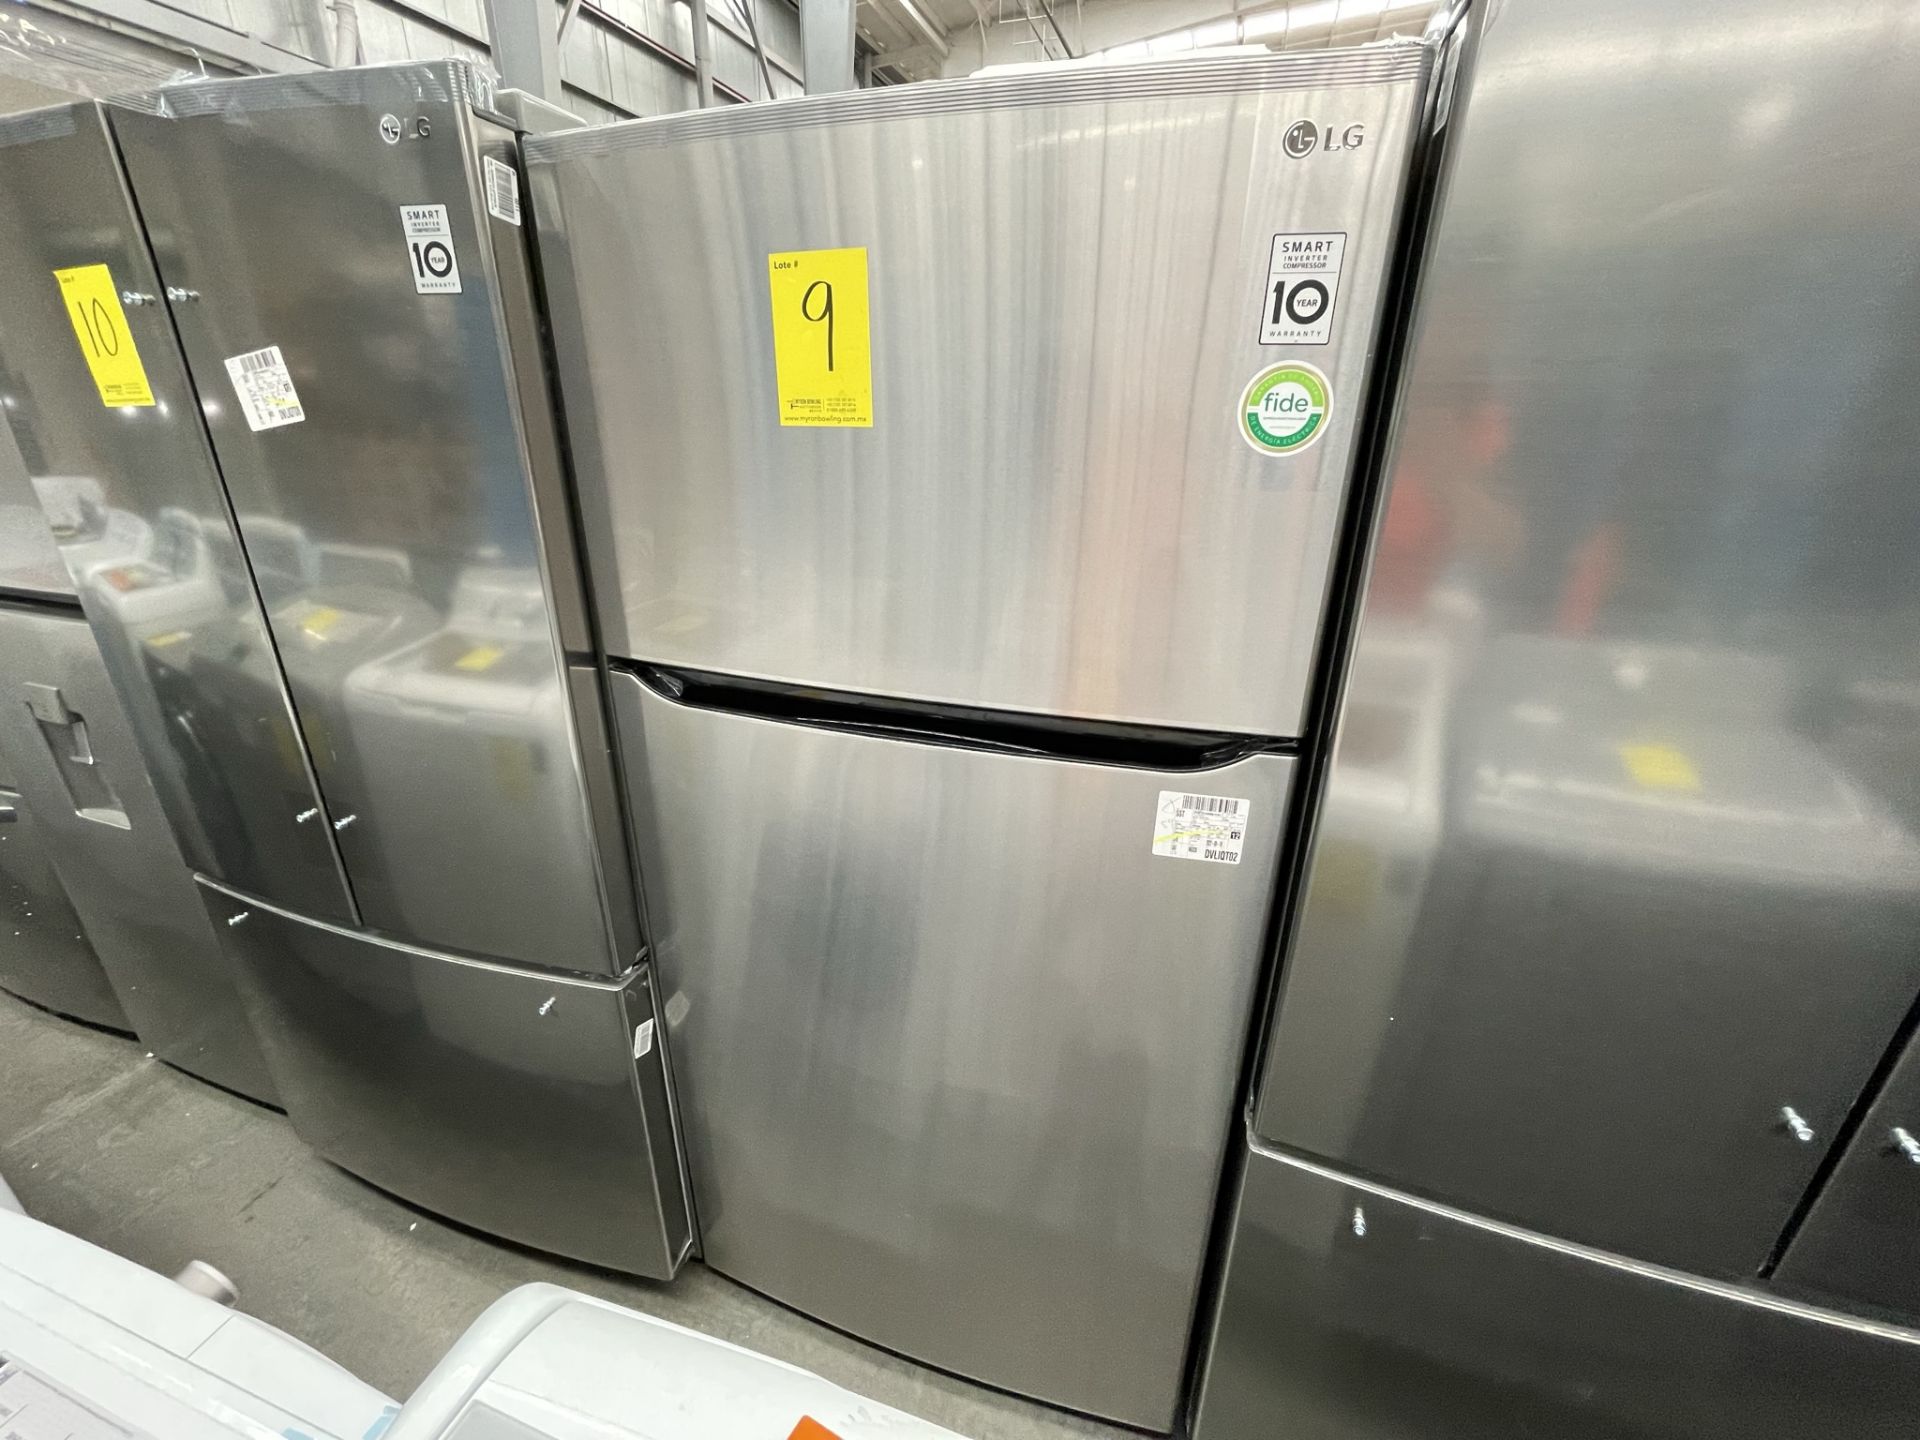 (EQUIPO NUEVO) 1 Refrigerador Marca LG, Modelo GT24BS, Serie V1C601, Color GRIS, LB-619781; (Nuevo, - Image 5 of 10